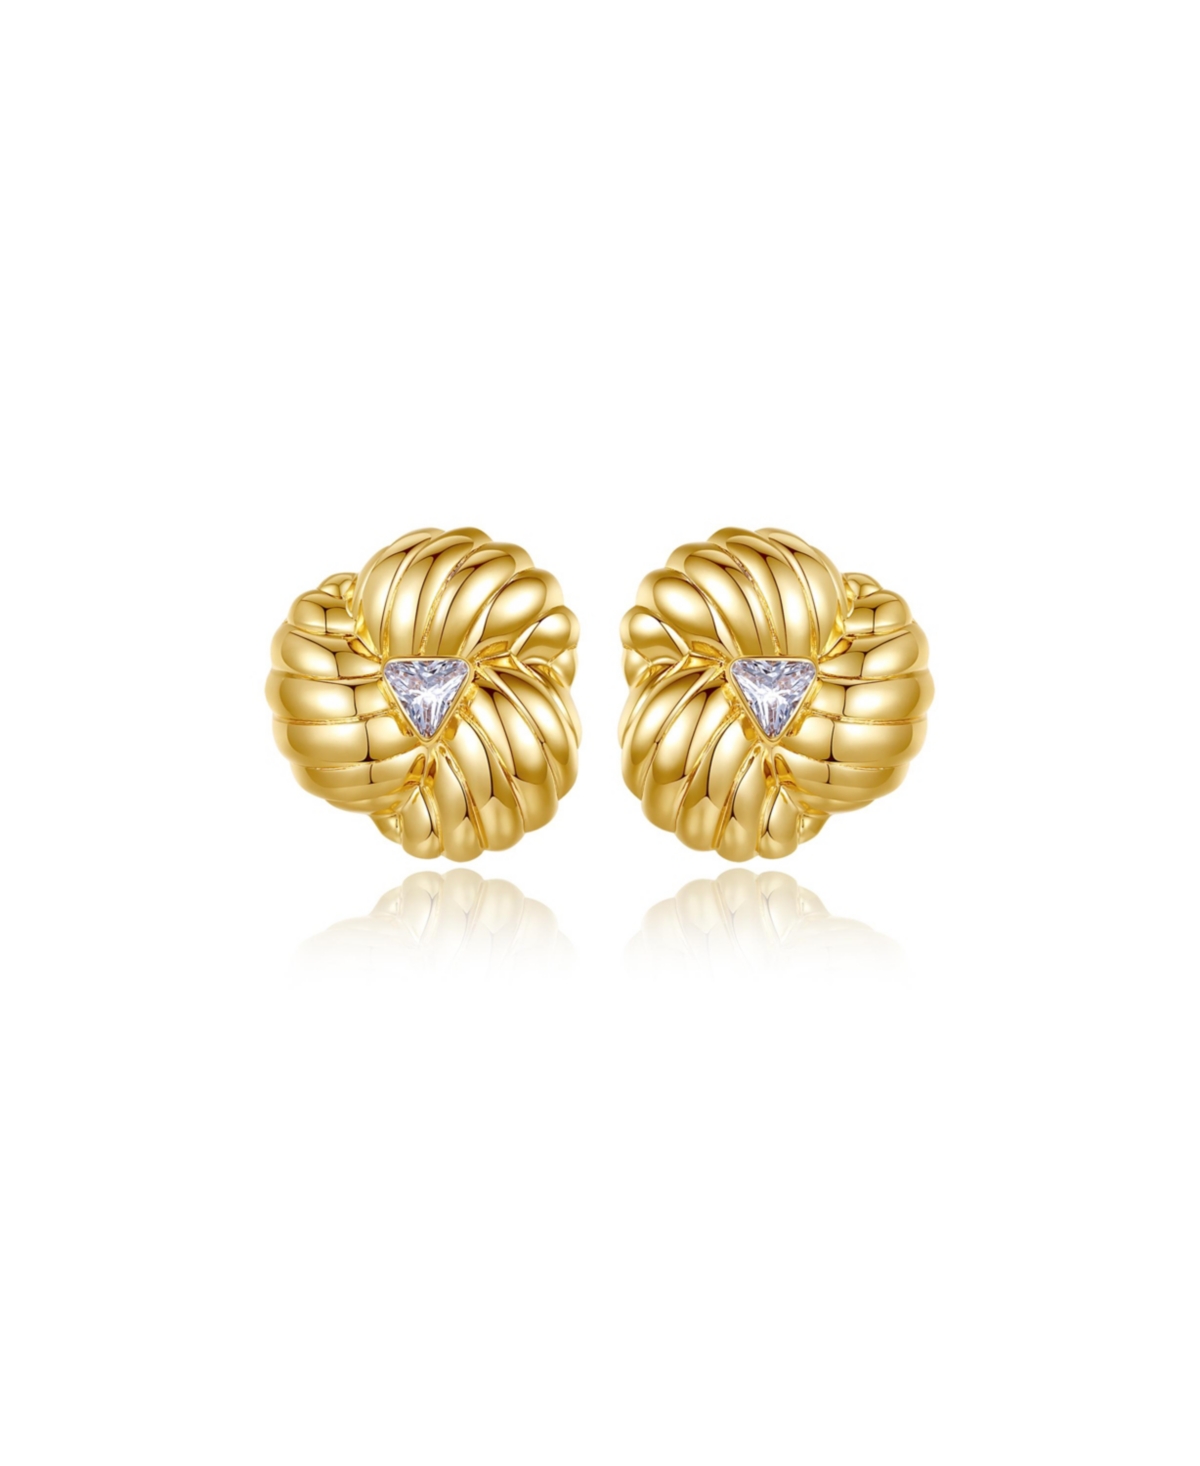 Clover Designed Stud Earrings - Gold